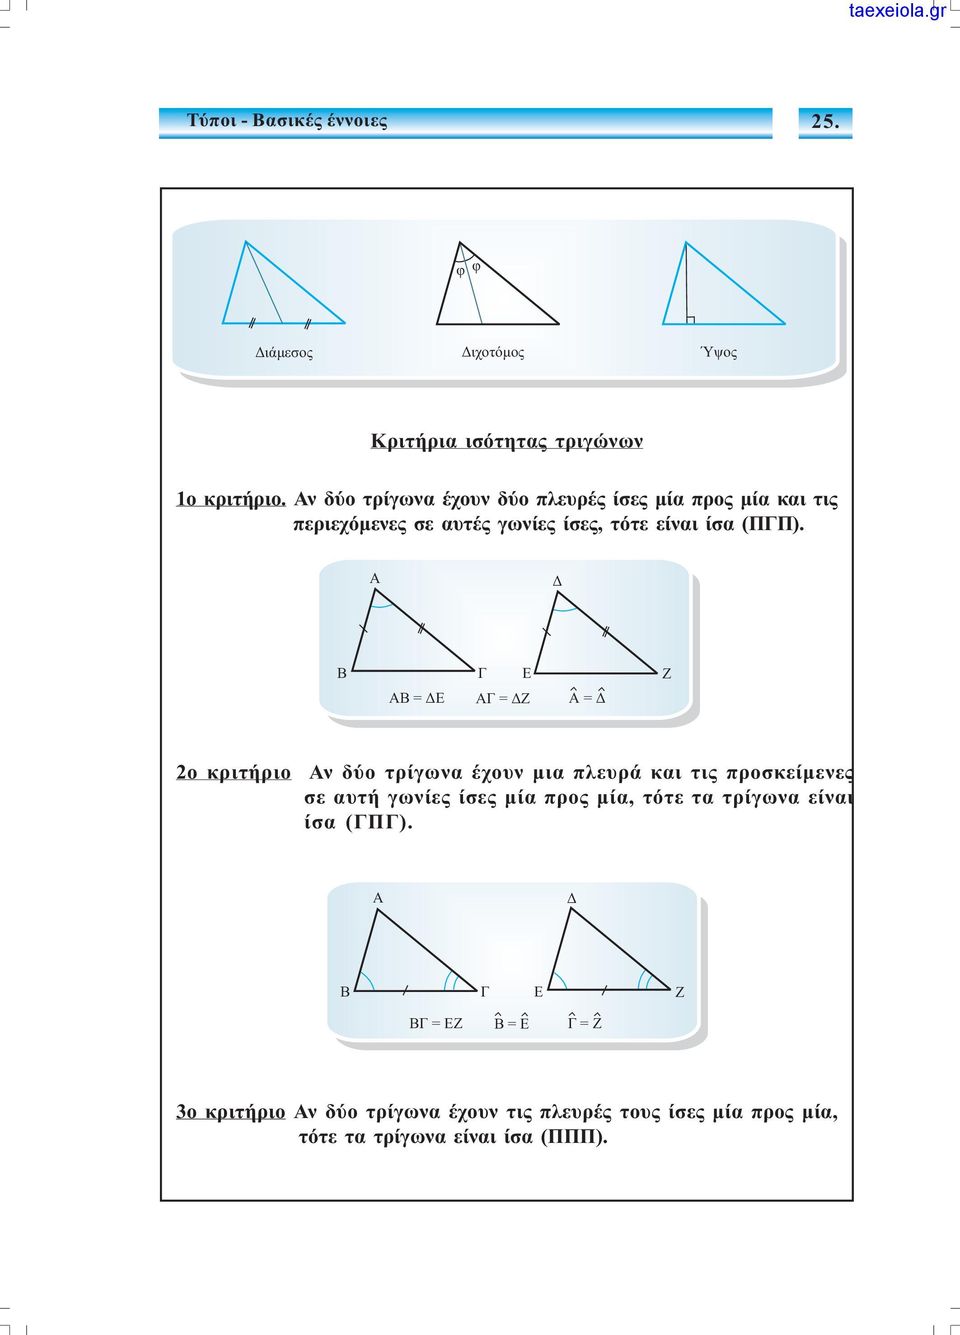 Ä ÁÂ=ÄÅ Á=ÄÆ Á=Ä E Æ ο κριτήριο Αν δύο τρίγωνα έχουν µια πλευρά και τις προσκείµενες σε αυτή γωνίες ίσες µία προς µία,